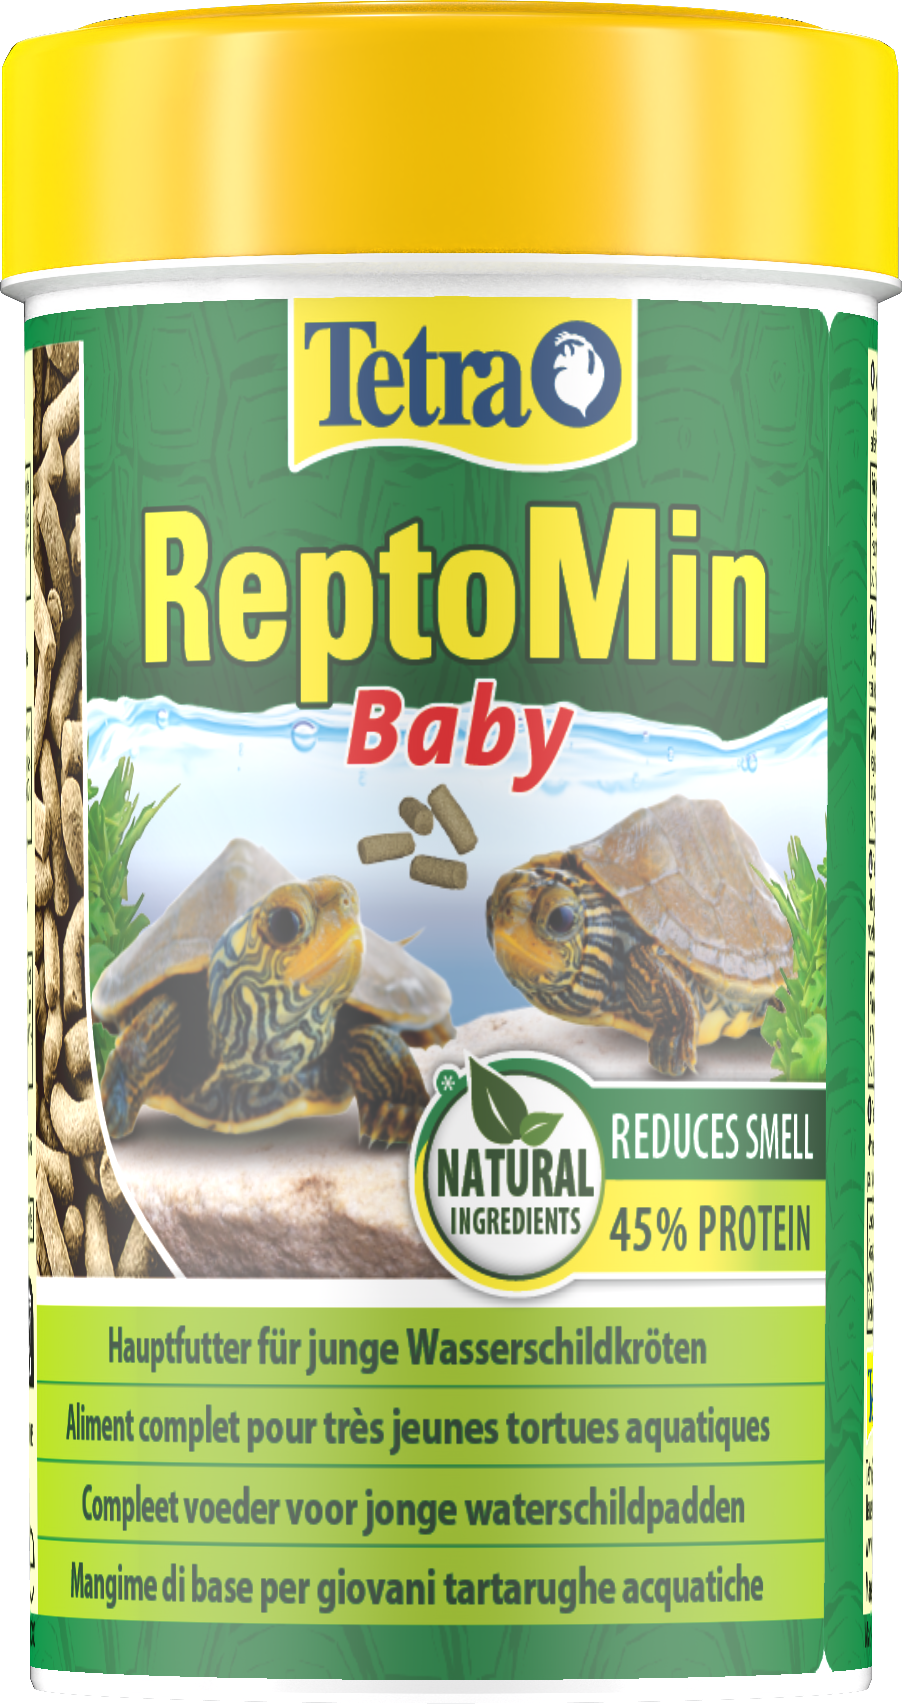 Tetra ReptoMin Baby: Tetra